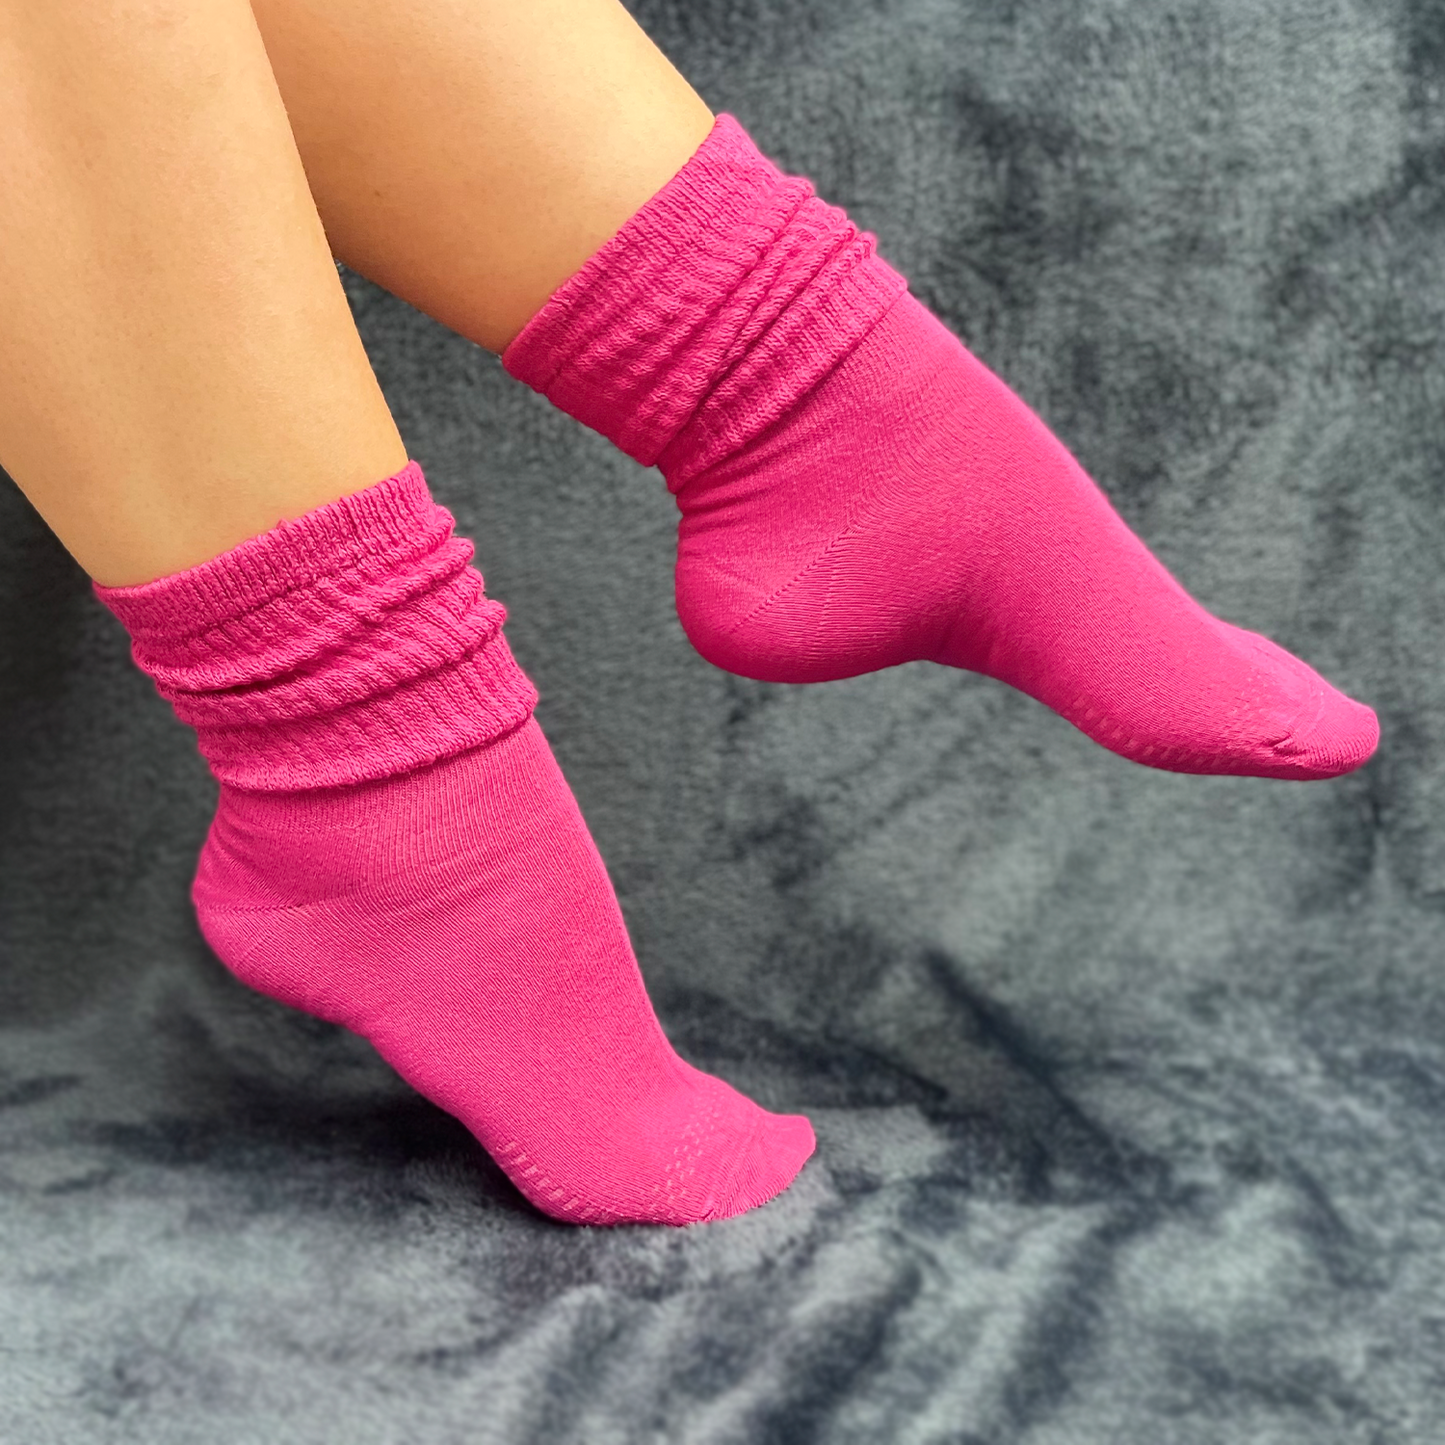 Socks in Bright Pink